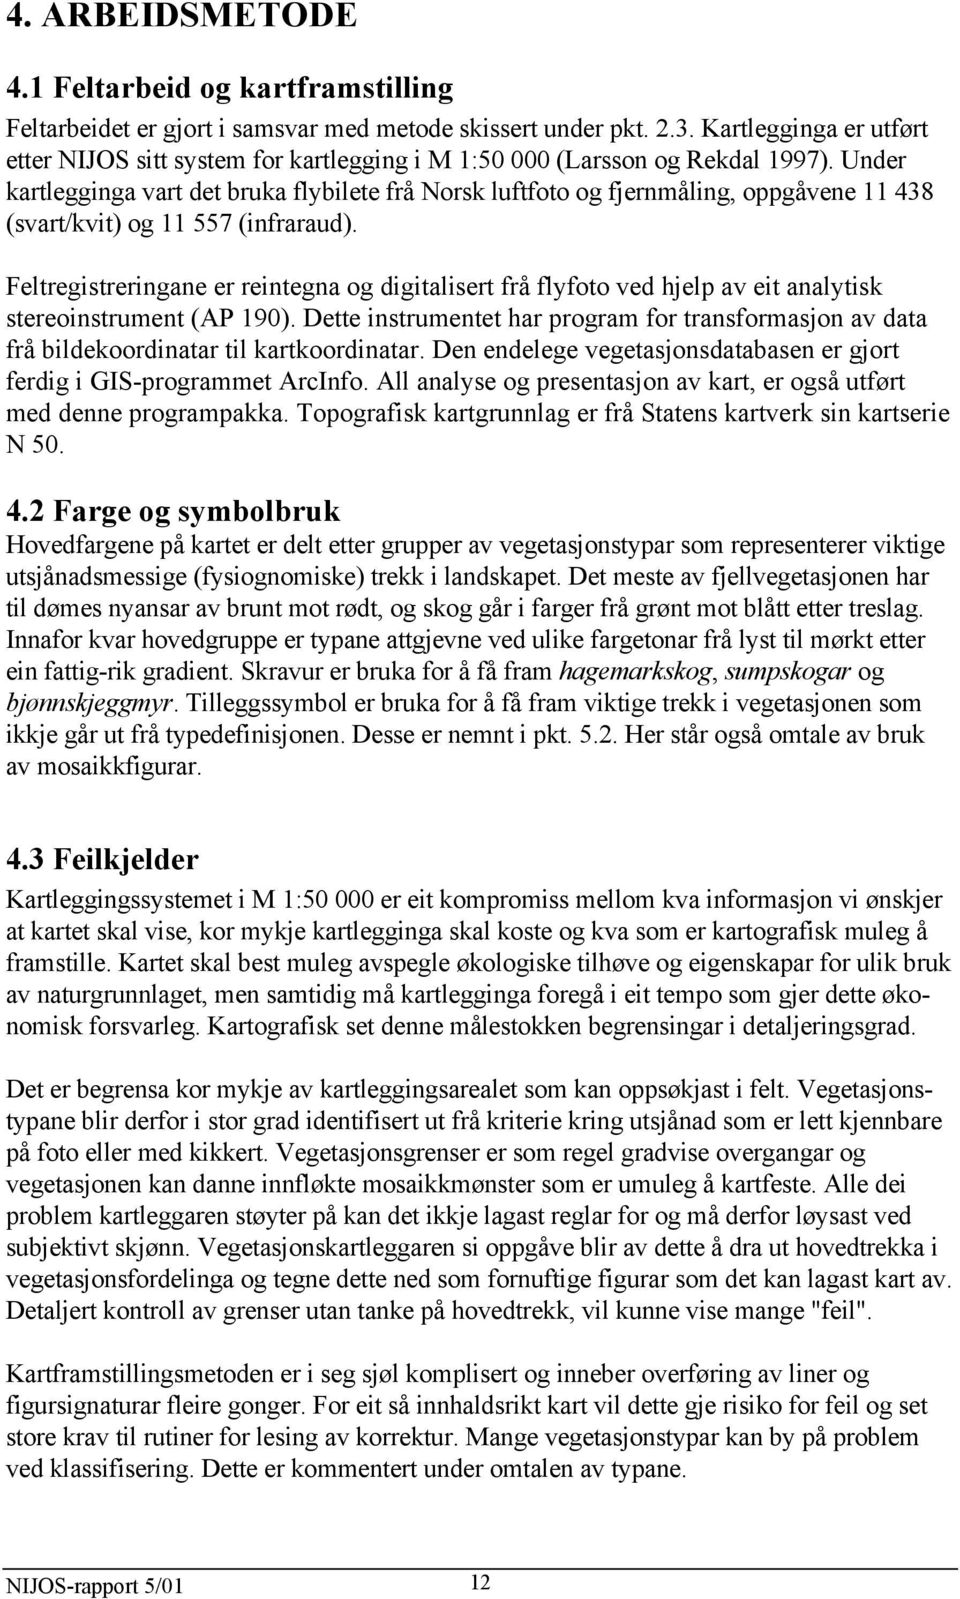 Under kartlegginga vart det bruka flybilete frå Norsk luftfoto og fjernmåling, oppgåvene 11 438 (svart/kvit) og 11 557 (infraraud).